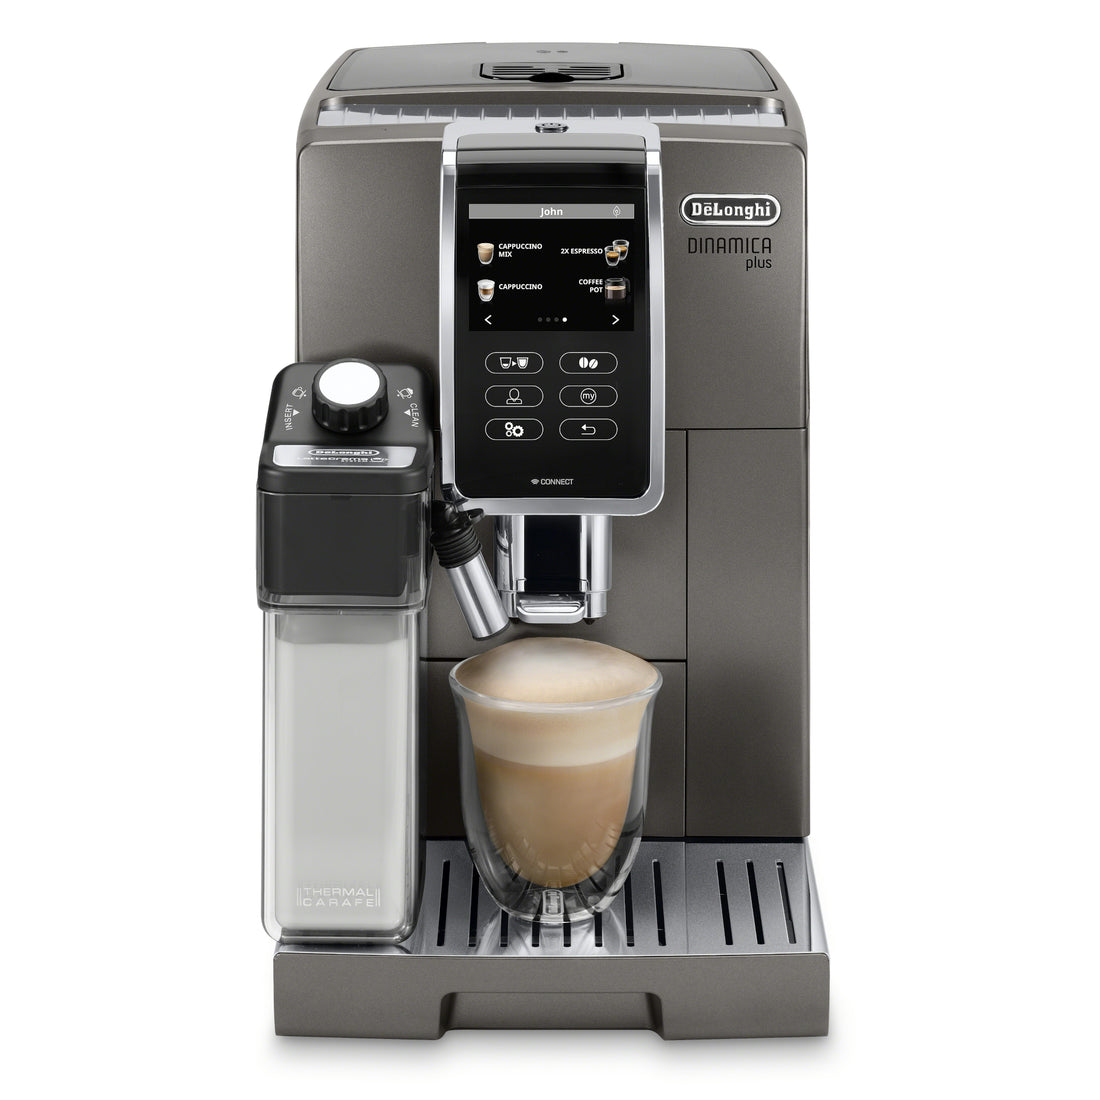 DeLonghi Dinamica Plus ECAM37095TI Espresso Machine – Whole Latte Love